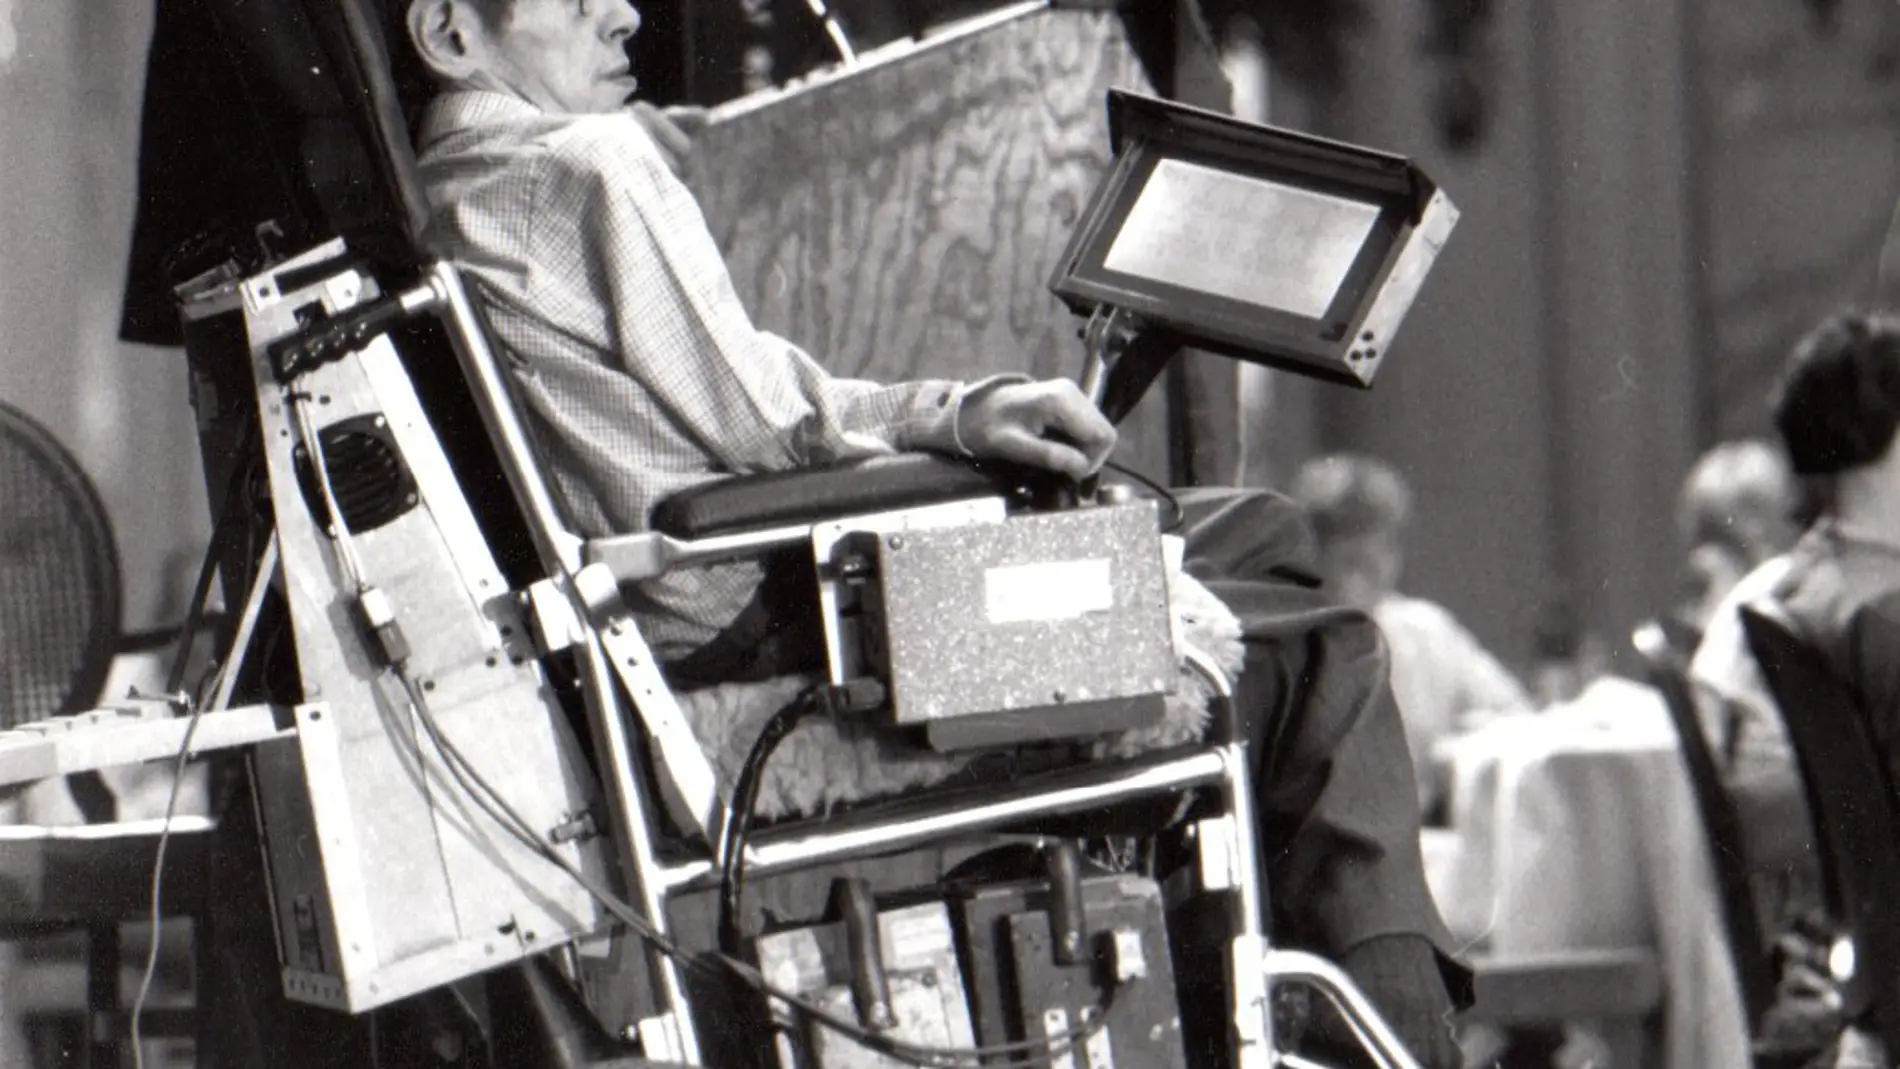 Se subasta una de las primeras sillas de ruedas utilizadas por Stephen Hawking